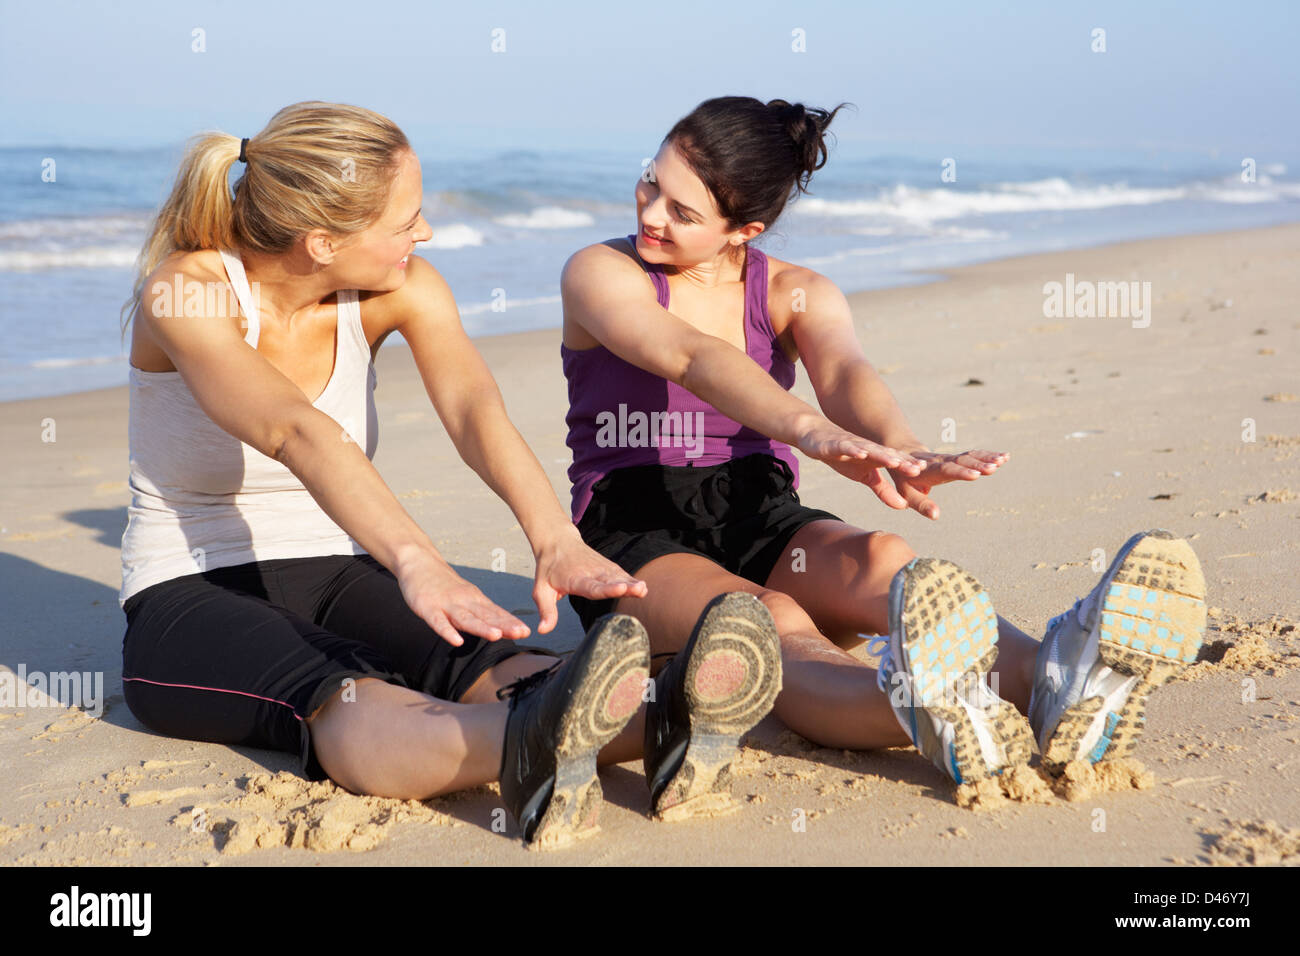 Two Women Exercising On Beach Stock Photo